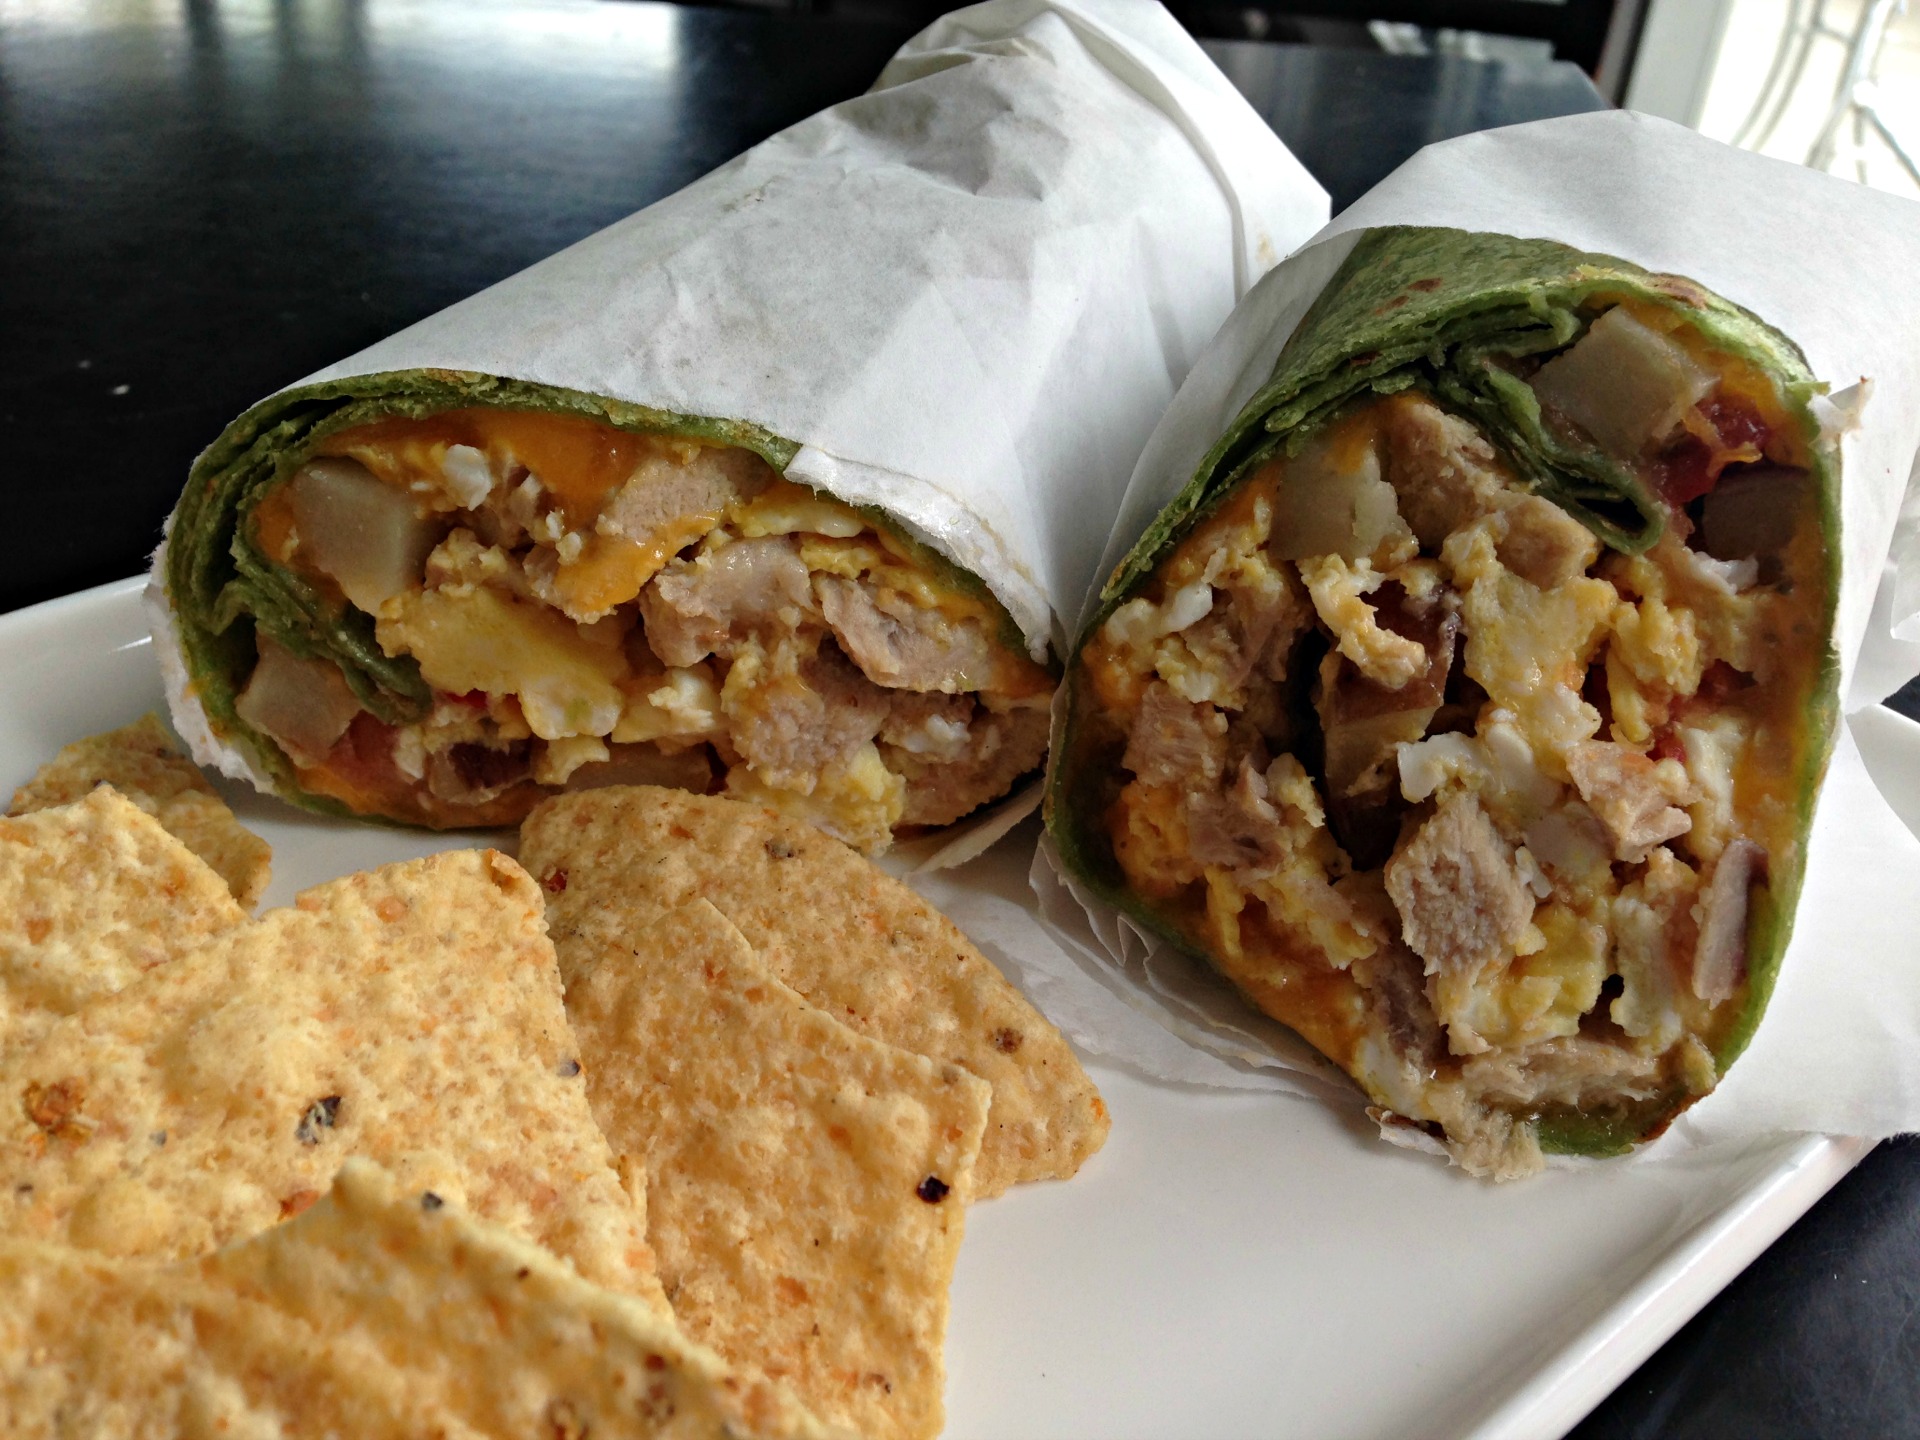 Pork breakfast burrito at Tribu Cafe.